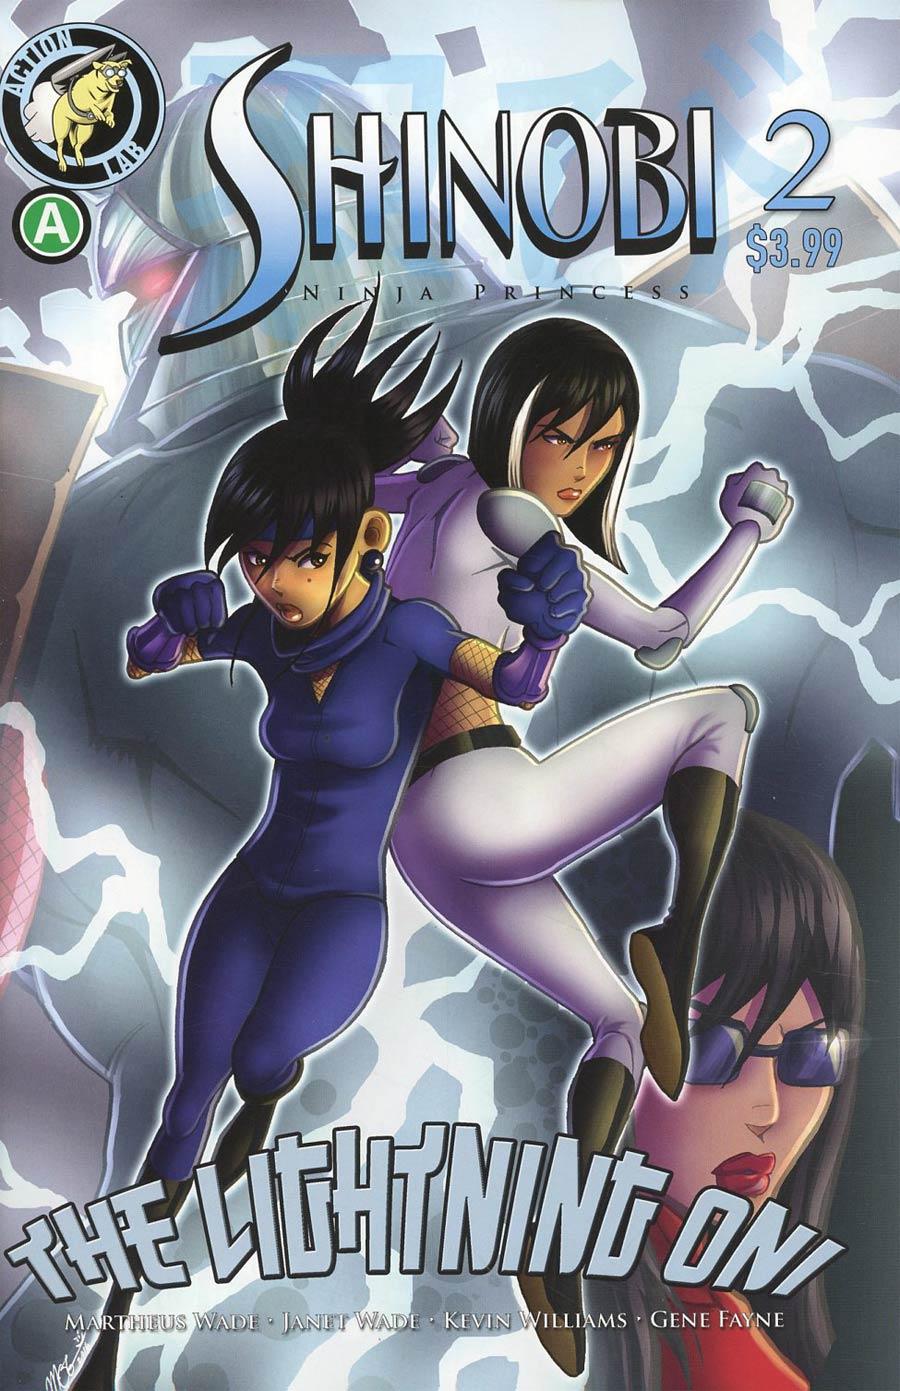 Shinobi Ninja Princess Lightning Oni Vol. 1 #2